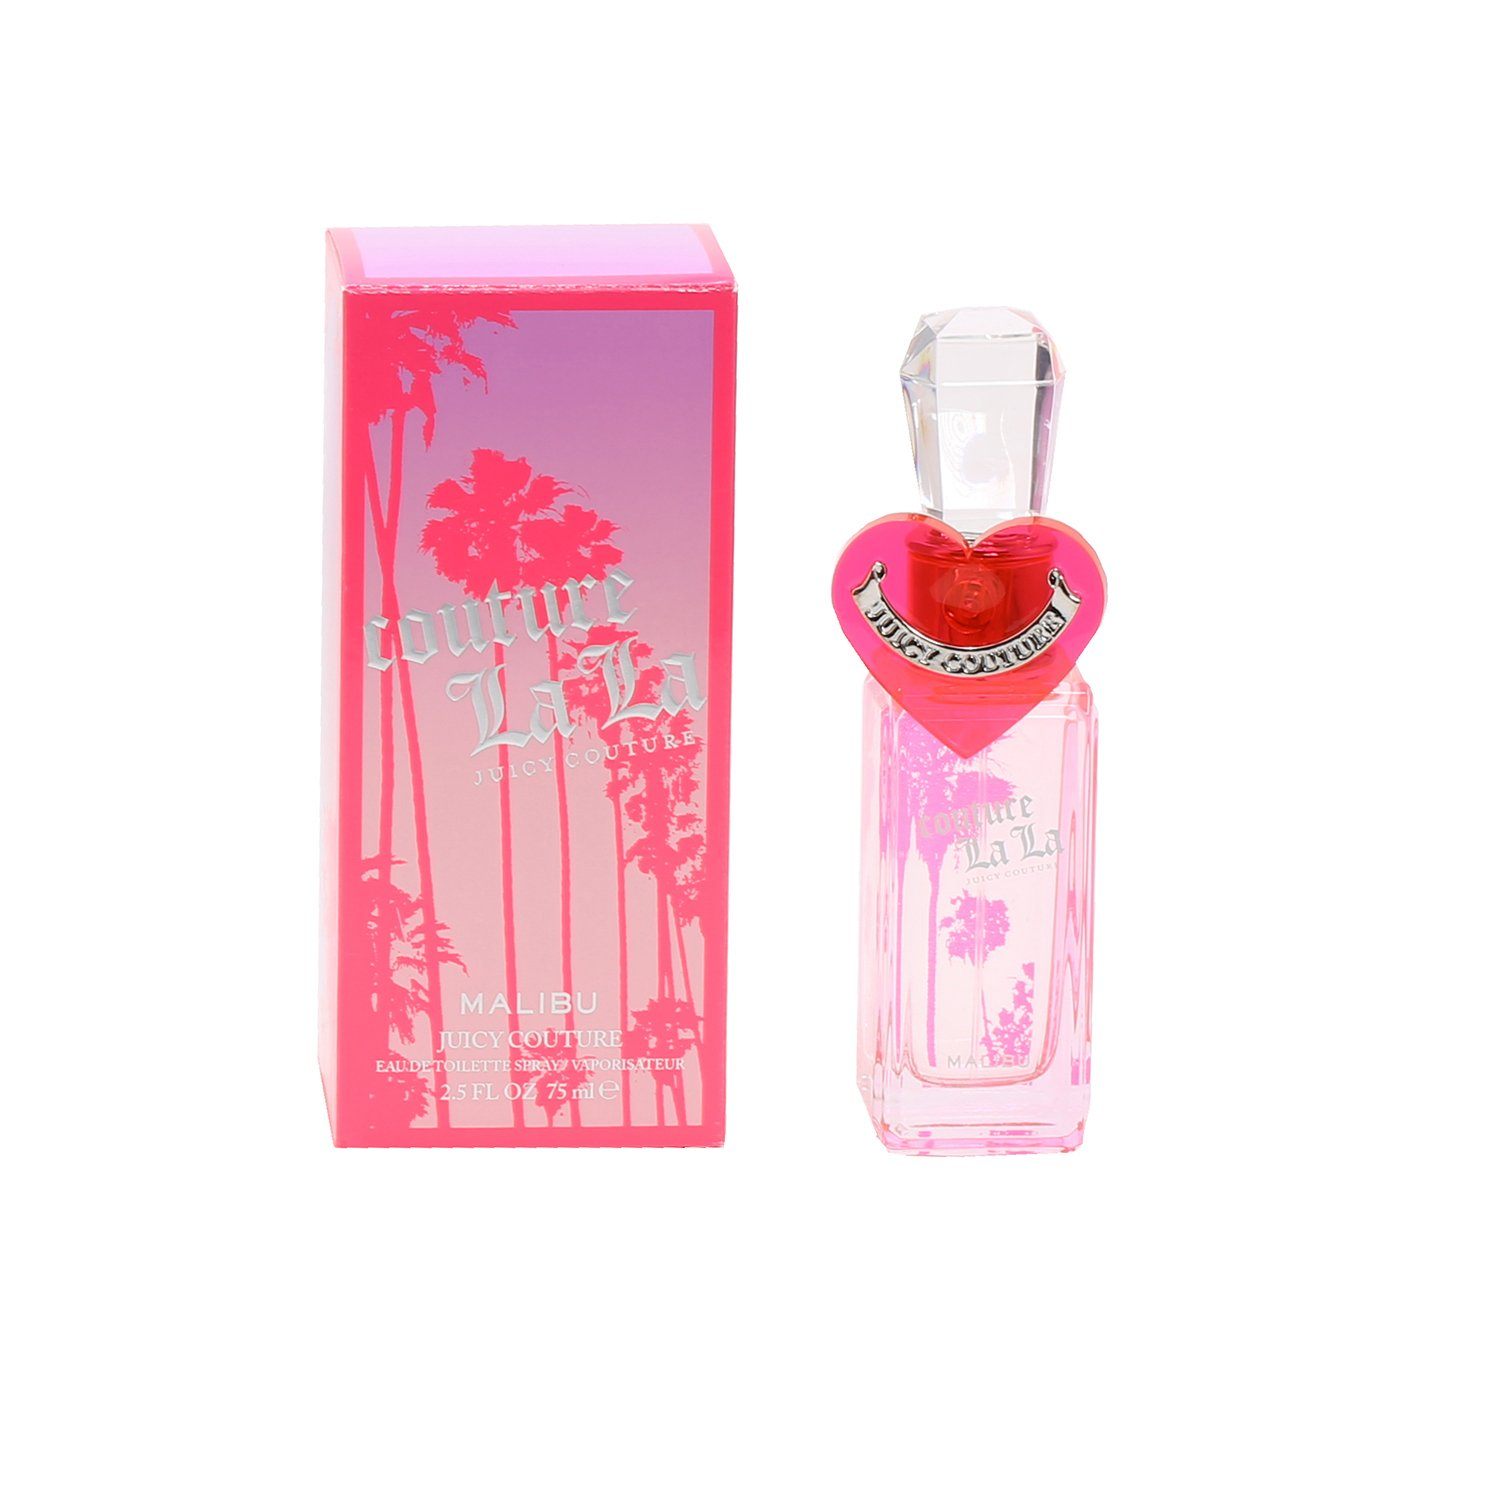 Perfume - COUTURE LA LA MALIBU FOR WOMEN By JUICY COUTURE - EAU DE TOILETTE SPRAY, 2.5 OZ